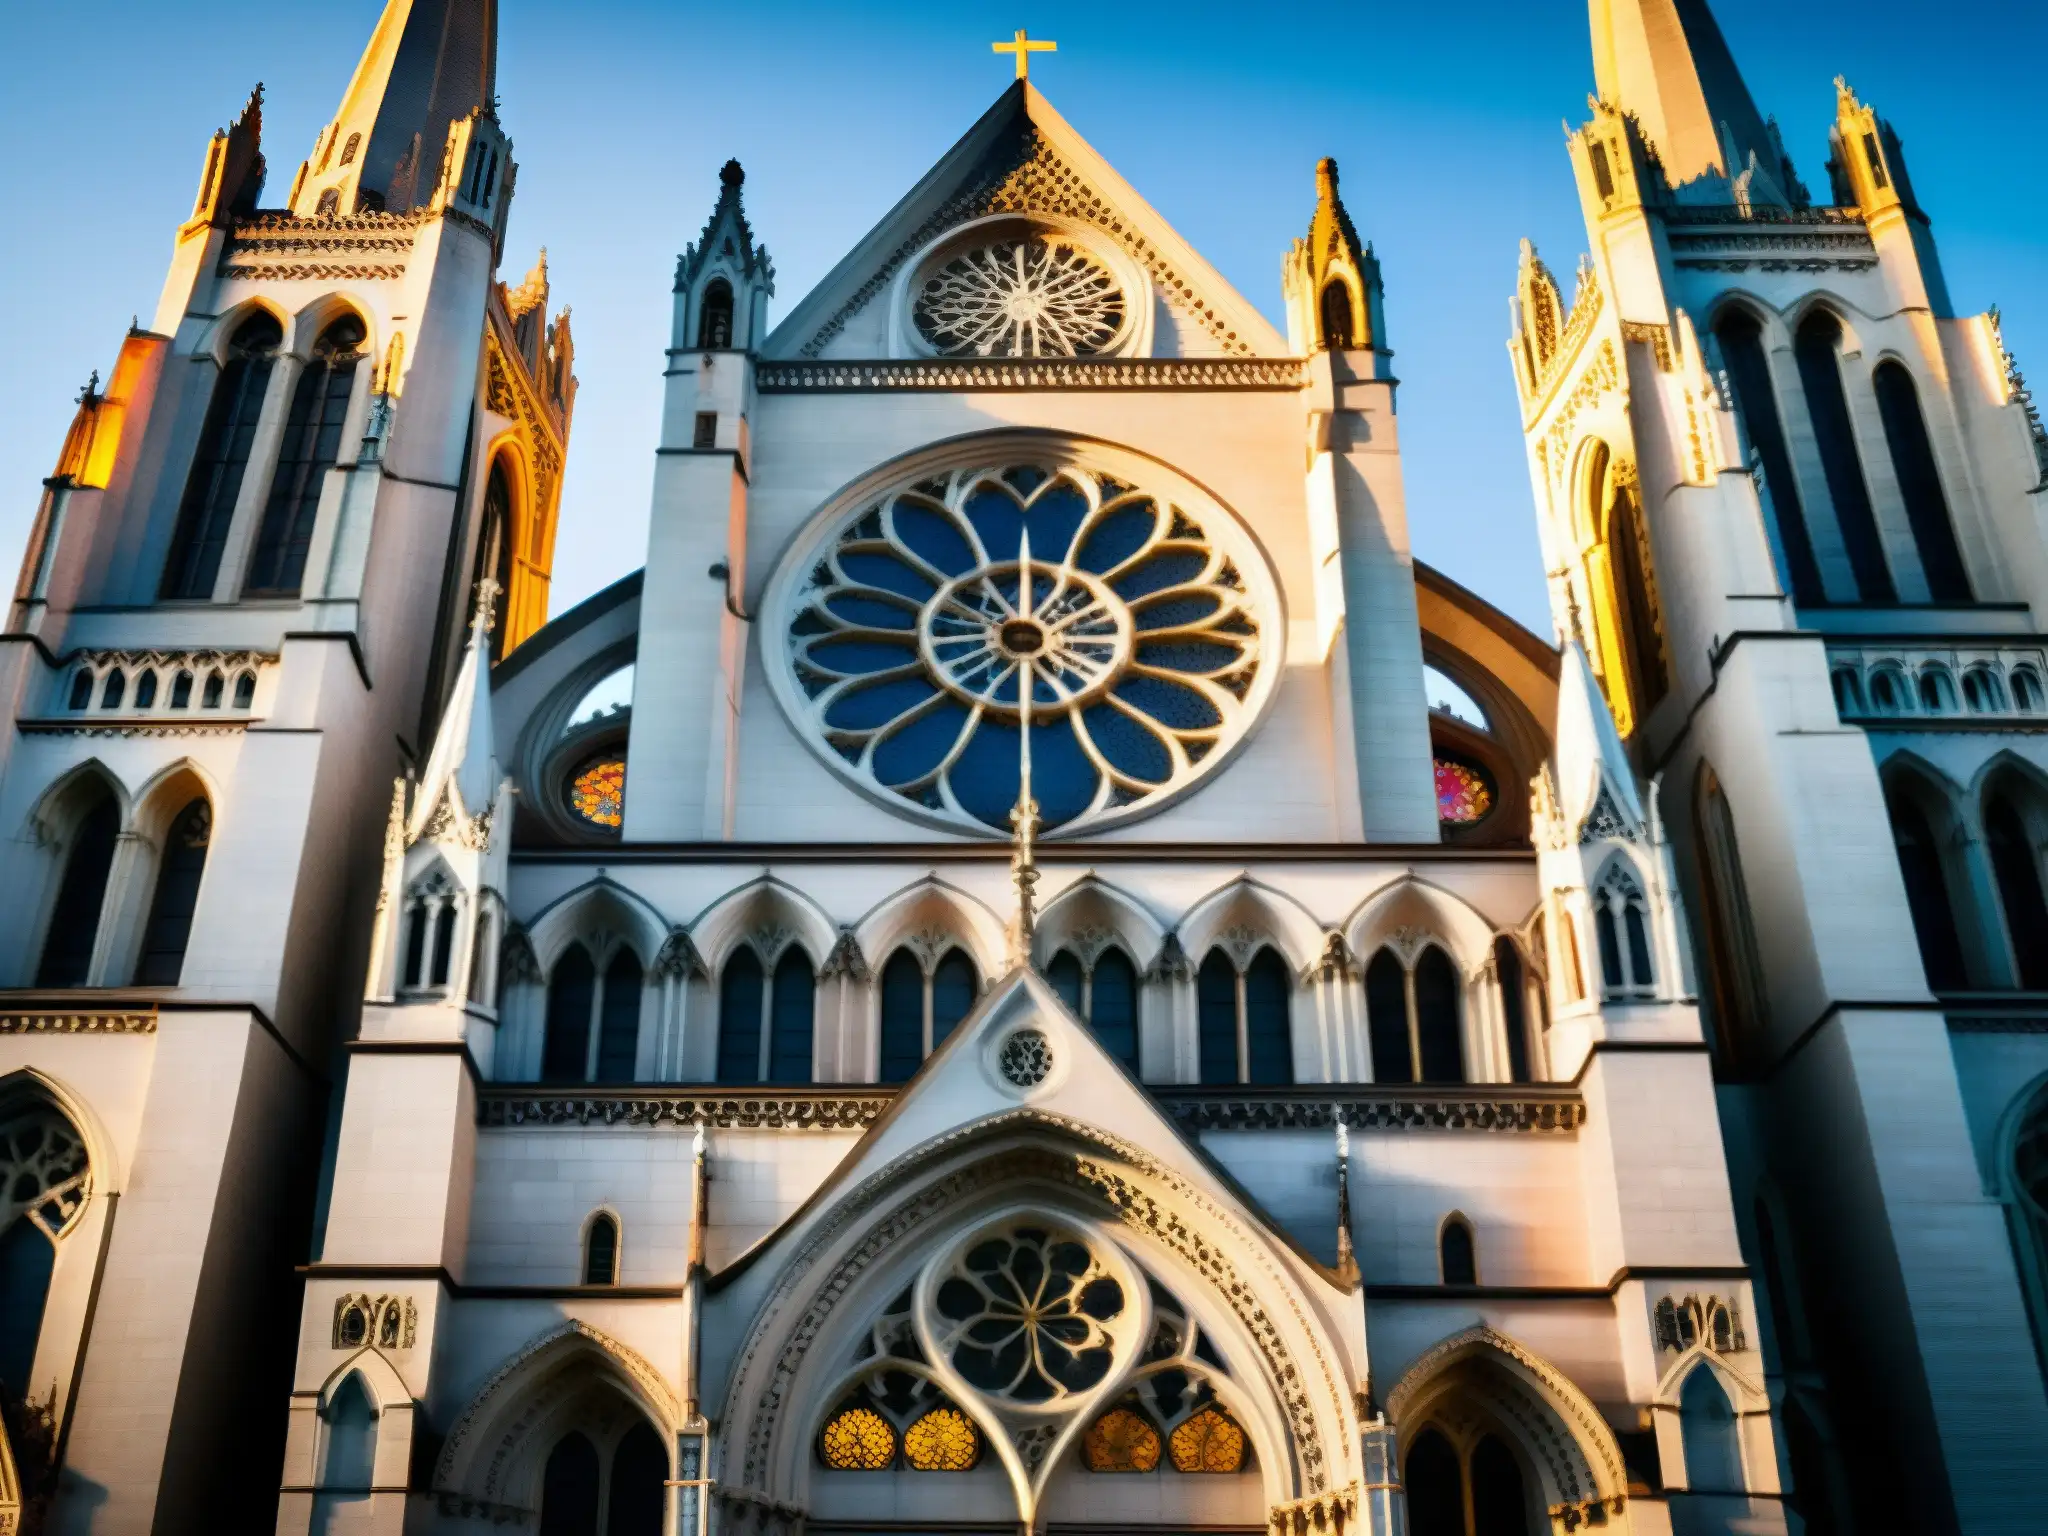 El atardecer ilumina la majestuosa Iglesia Riverside en Nueva York, resaltando sus detalles góticos y vitrales, con personas congregadas